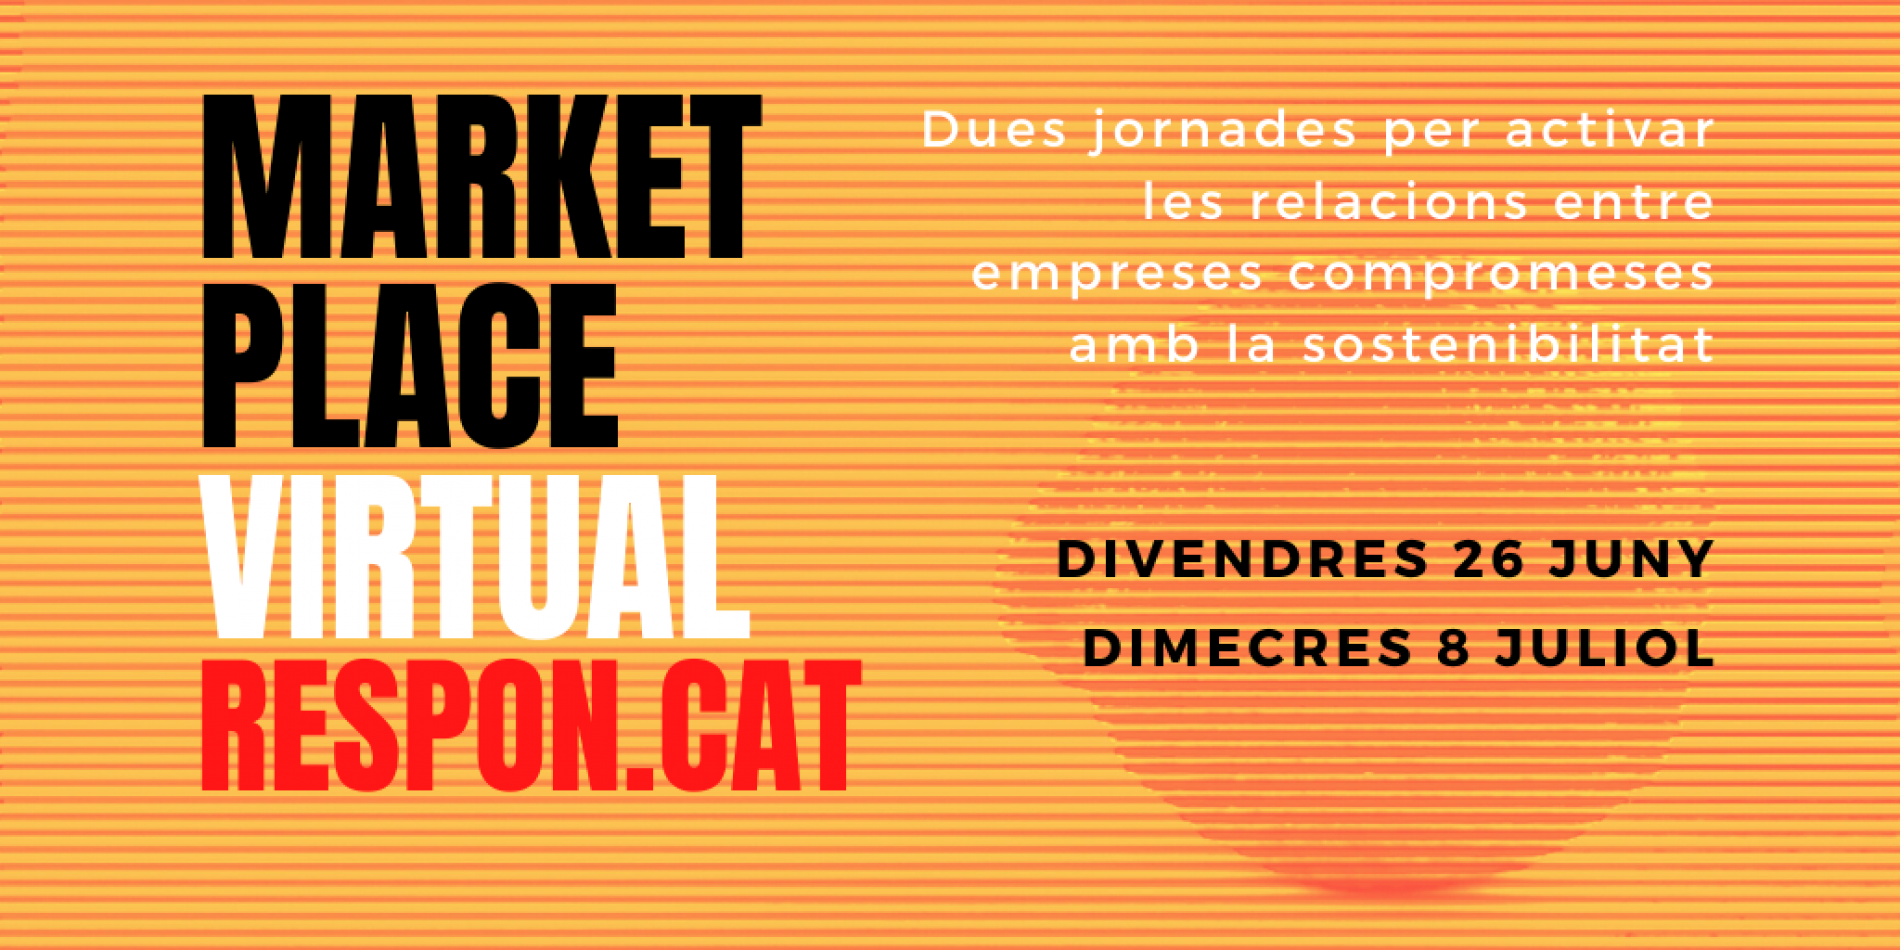 8 de juliol: Marketplace virtual Respon.cat